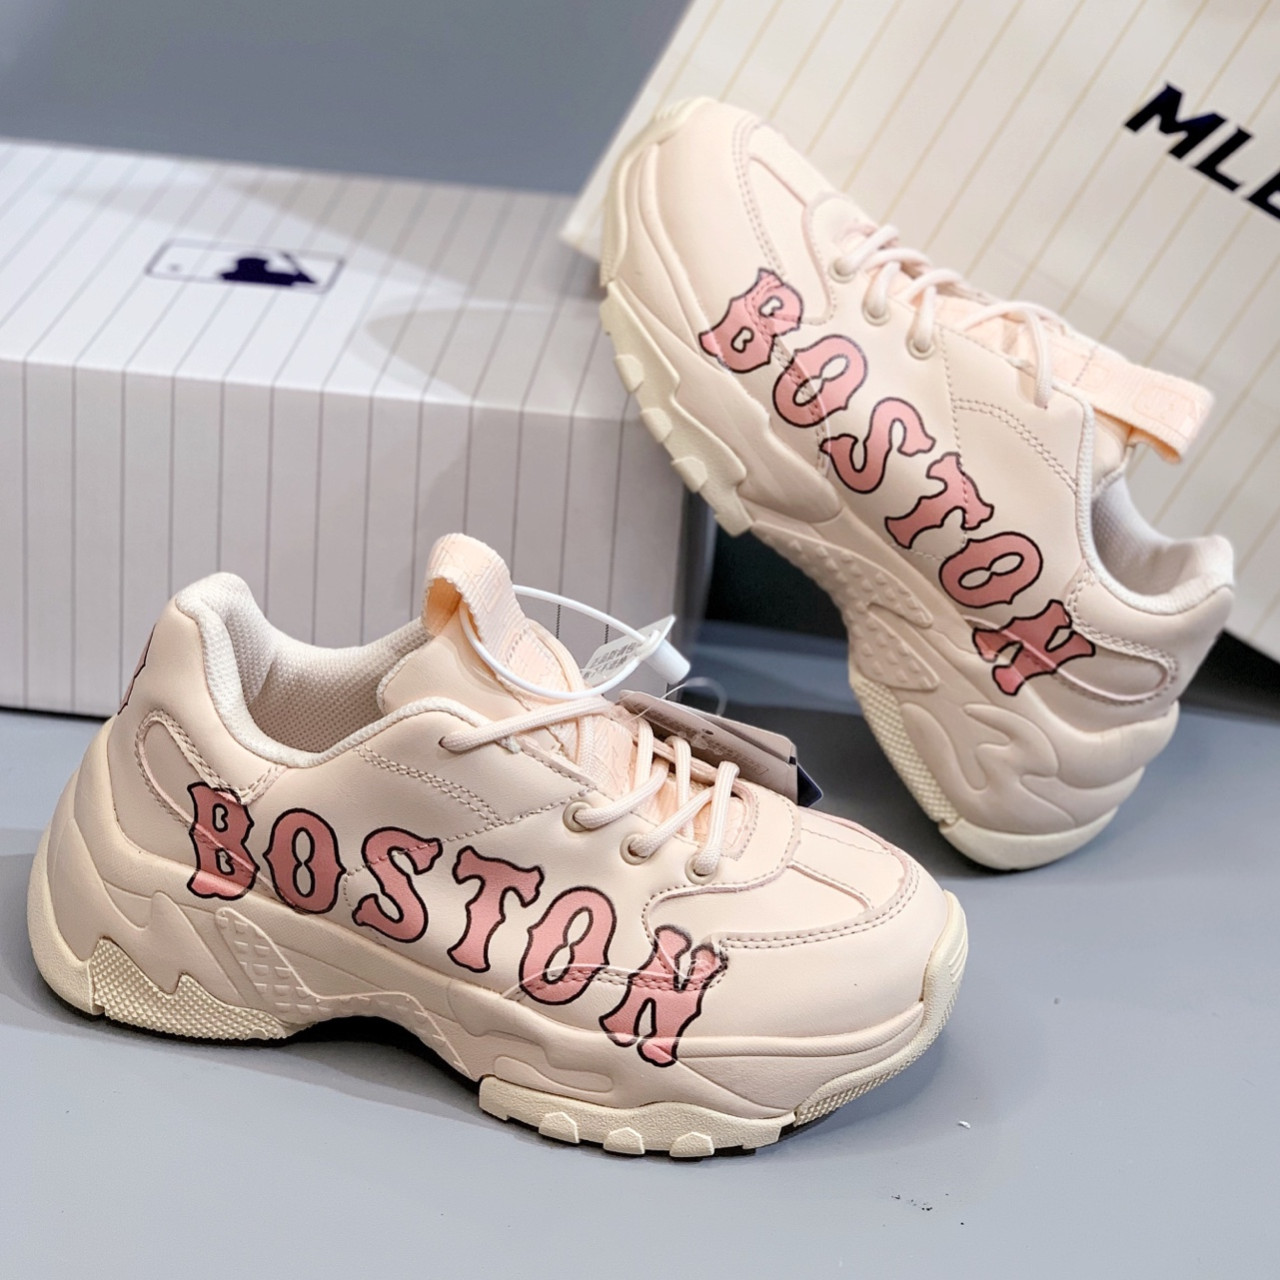 Giày MLB Sneaker Boston Pink  Uspox  Siêu thị giày thể thao chính hãng